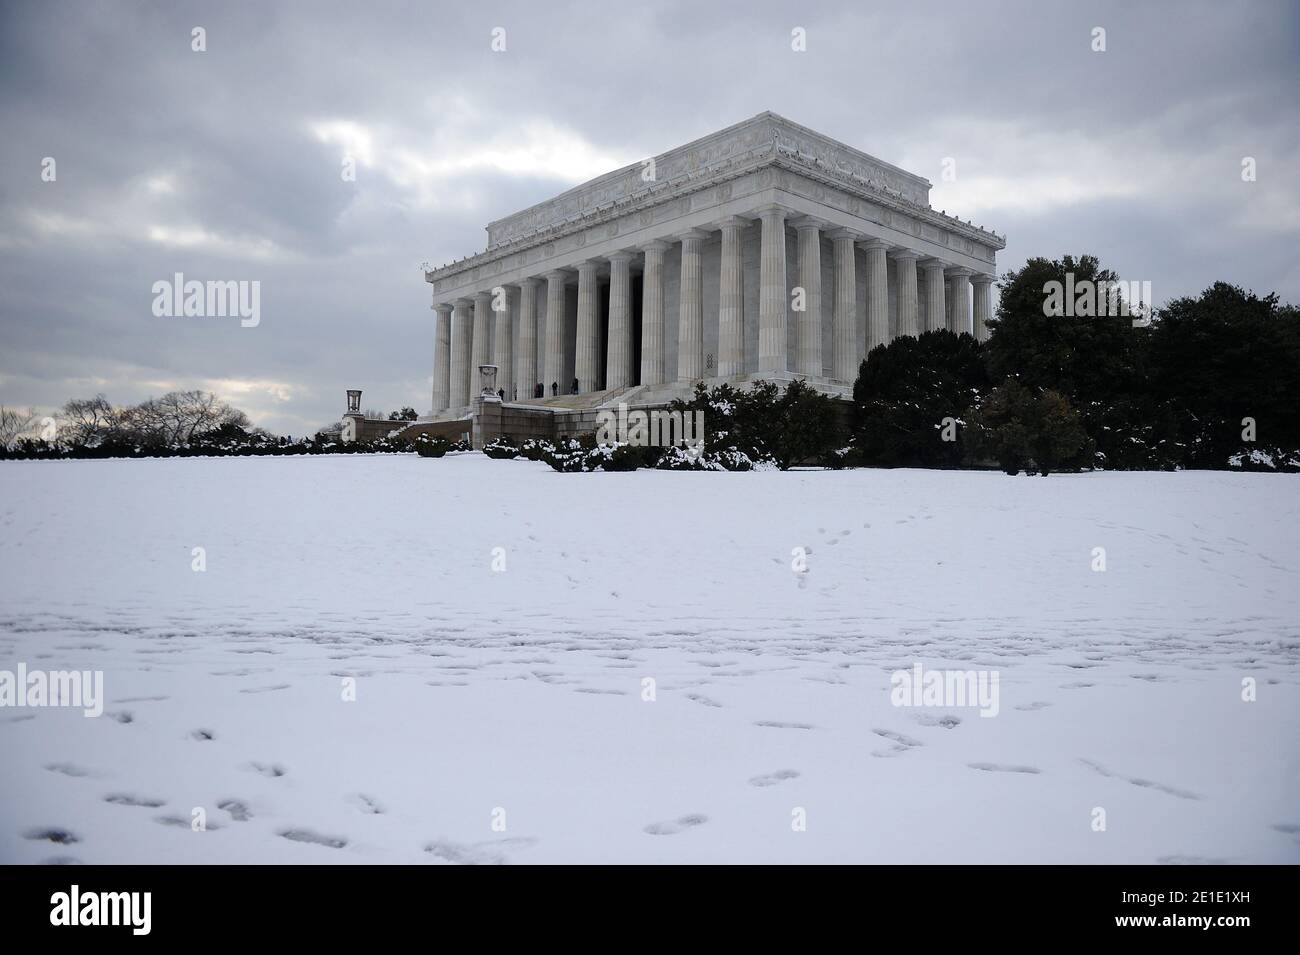 El Lincoln Memorial después de una tormenta de nieve importante en Washington, DC, EE.UU., 27 de enero de 2011. Más de 400,000 residentes locales del área de Washington, DC, quedaron sin energía después de la tormenta de nieve de anoche. Foto de Olivier Douliery/ ABACAPRESS.COM Foto de stock